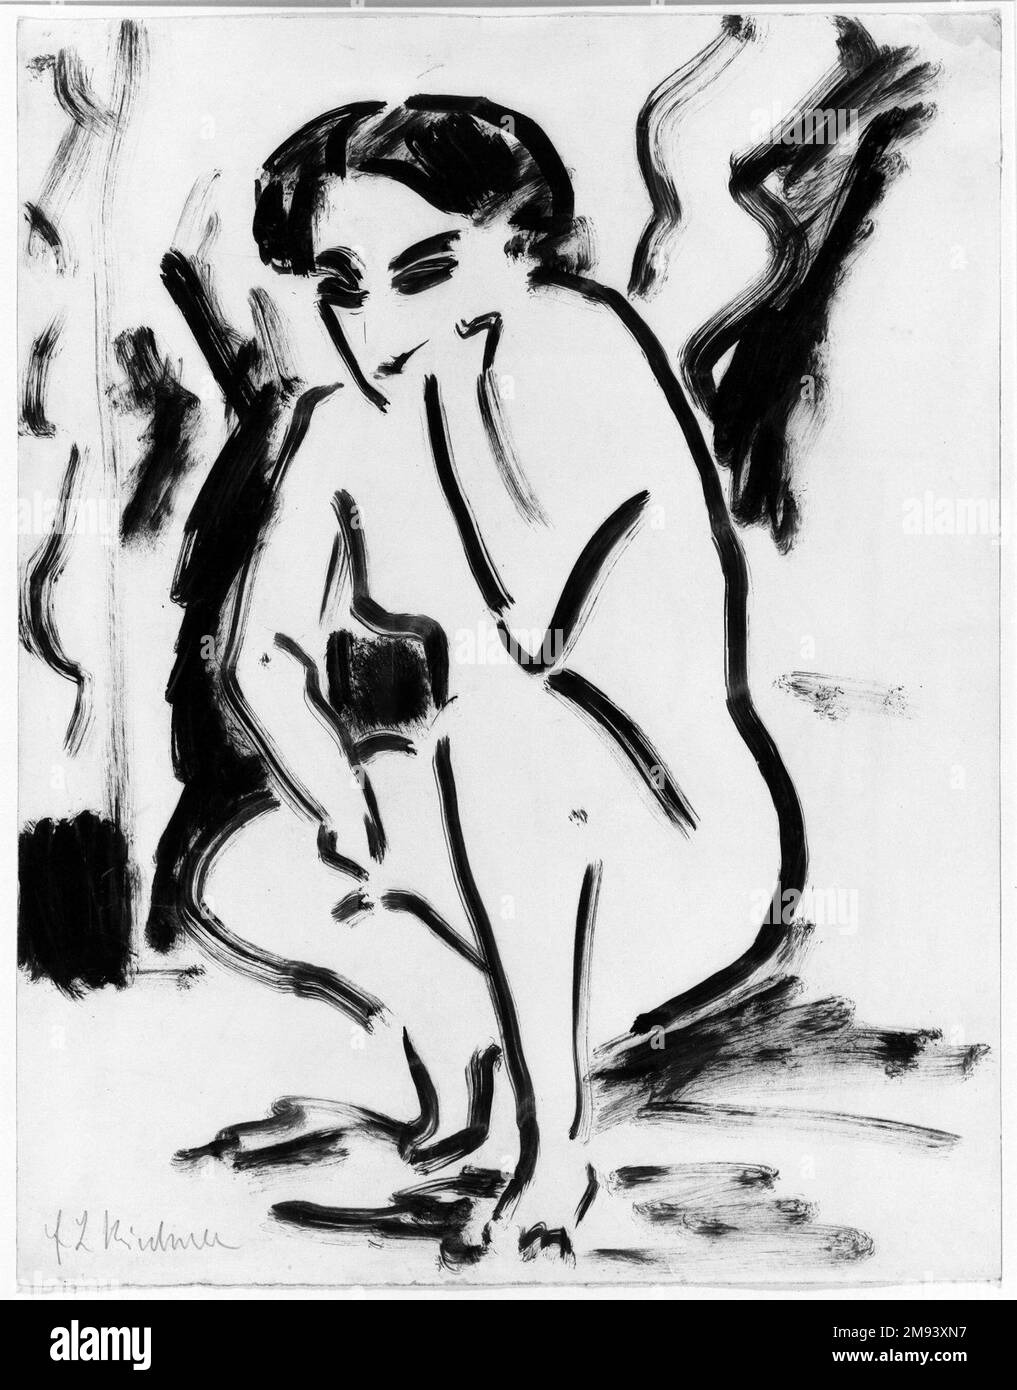 Kauerndes Weib Ernst Ludwig Kirchner (allemand, 1880-1938). , ca. 1909. Dessin au stylo et au pinceau sur papier vélin, 17 11/16 x 13 3/4 po. (45 x 35 cm). Art européen ca. 1909 Banque D'Images